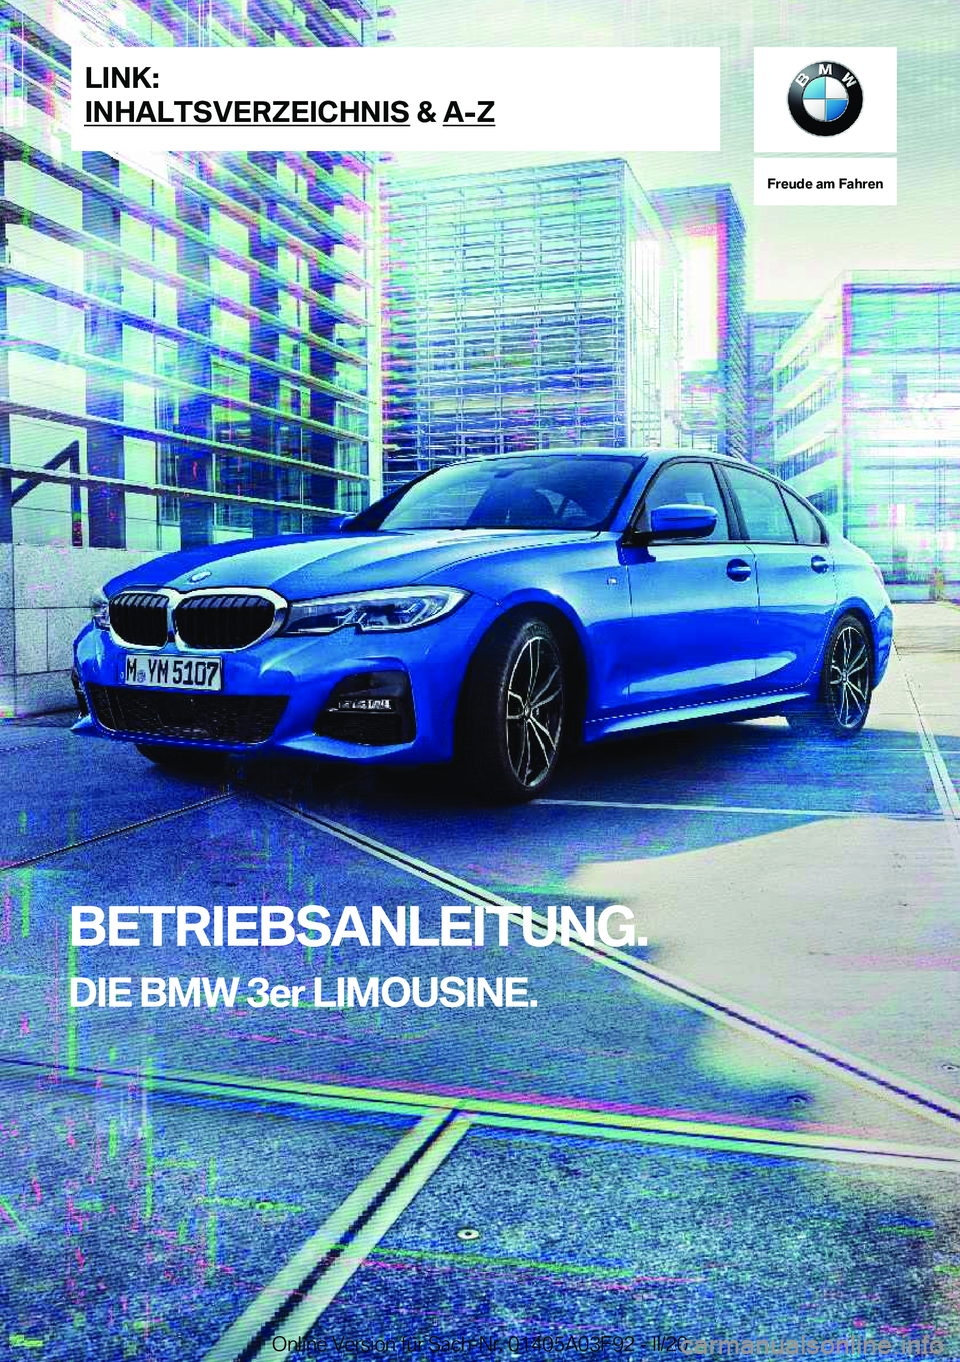 BMW 3 SERIES 2020  Betriebsanleitungen (in German) �F�r�e�u�d�e��a�m��F�a�h�r�e�n
�B�E�T�R�I�E�B�S�A�N�L�E�I�T�U�N�G�.�D�I�E��B�M�W��3�e�r��L�I�M�O�U�S�I�N�E�.�L�I�N�K�:
�I�N�H�A�L�T�S�V�E�R�Z�E�I�C�H�N�I�S��&��A�-�Z�O�n�l�i�n�e��V�e�r�s�i�o�n